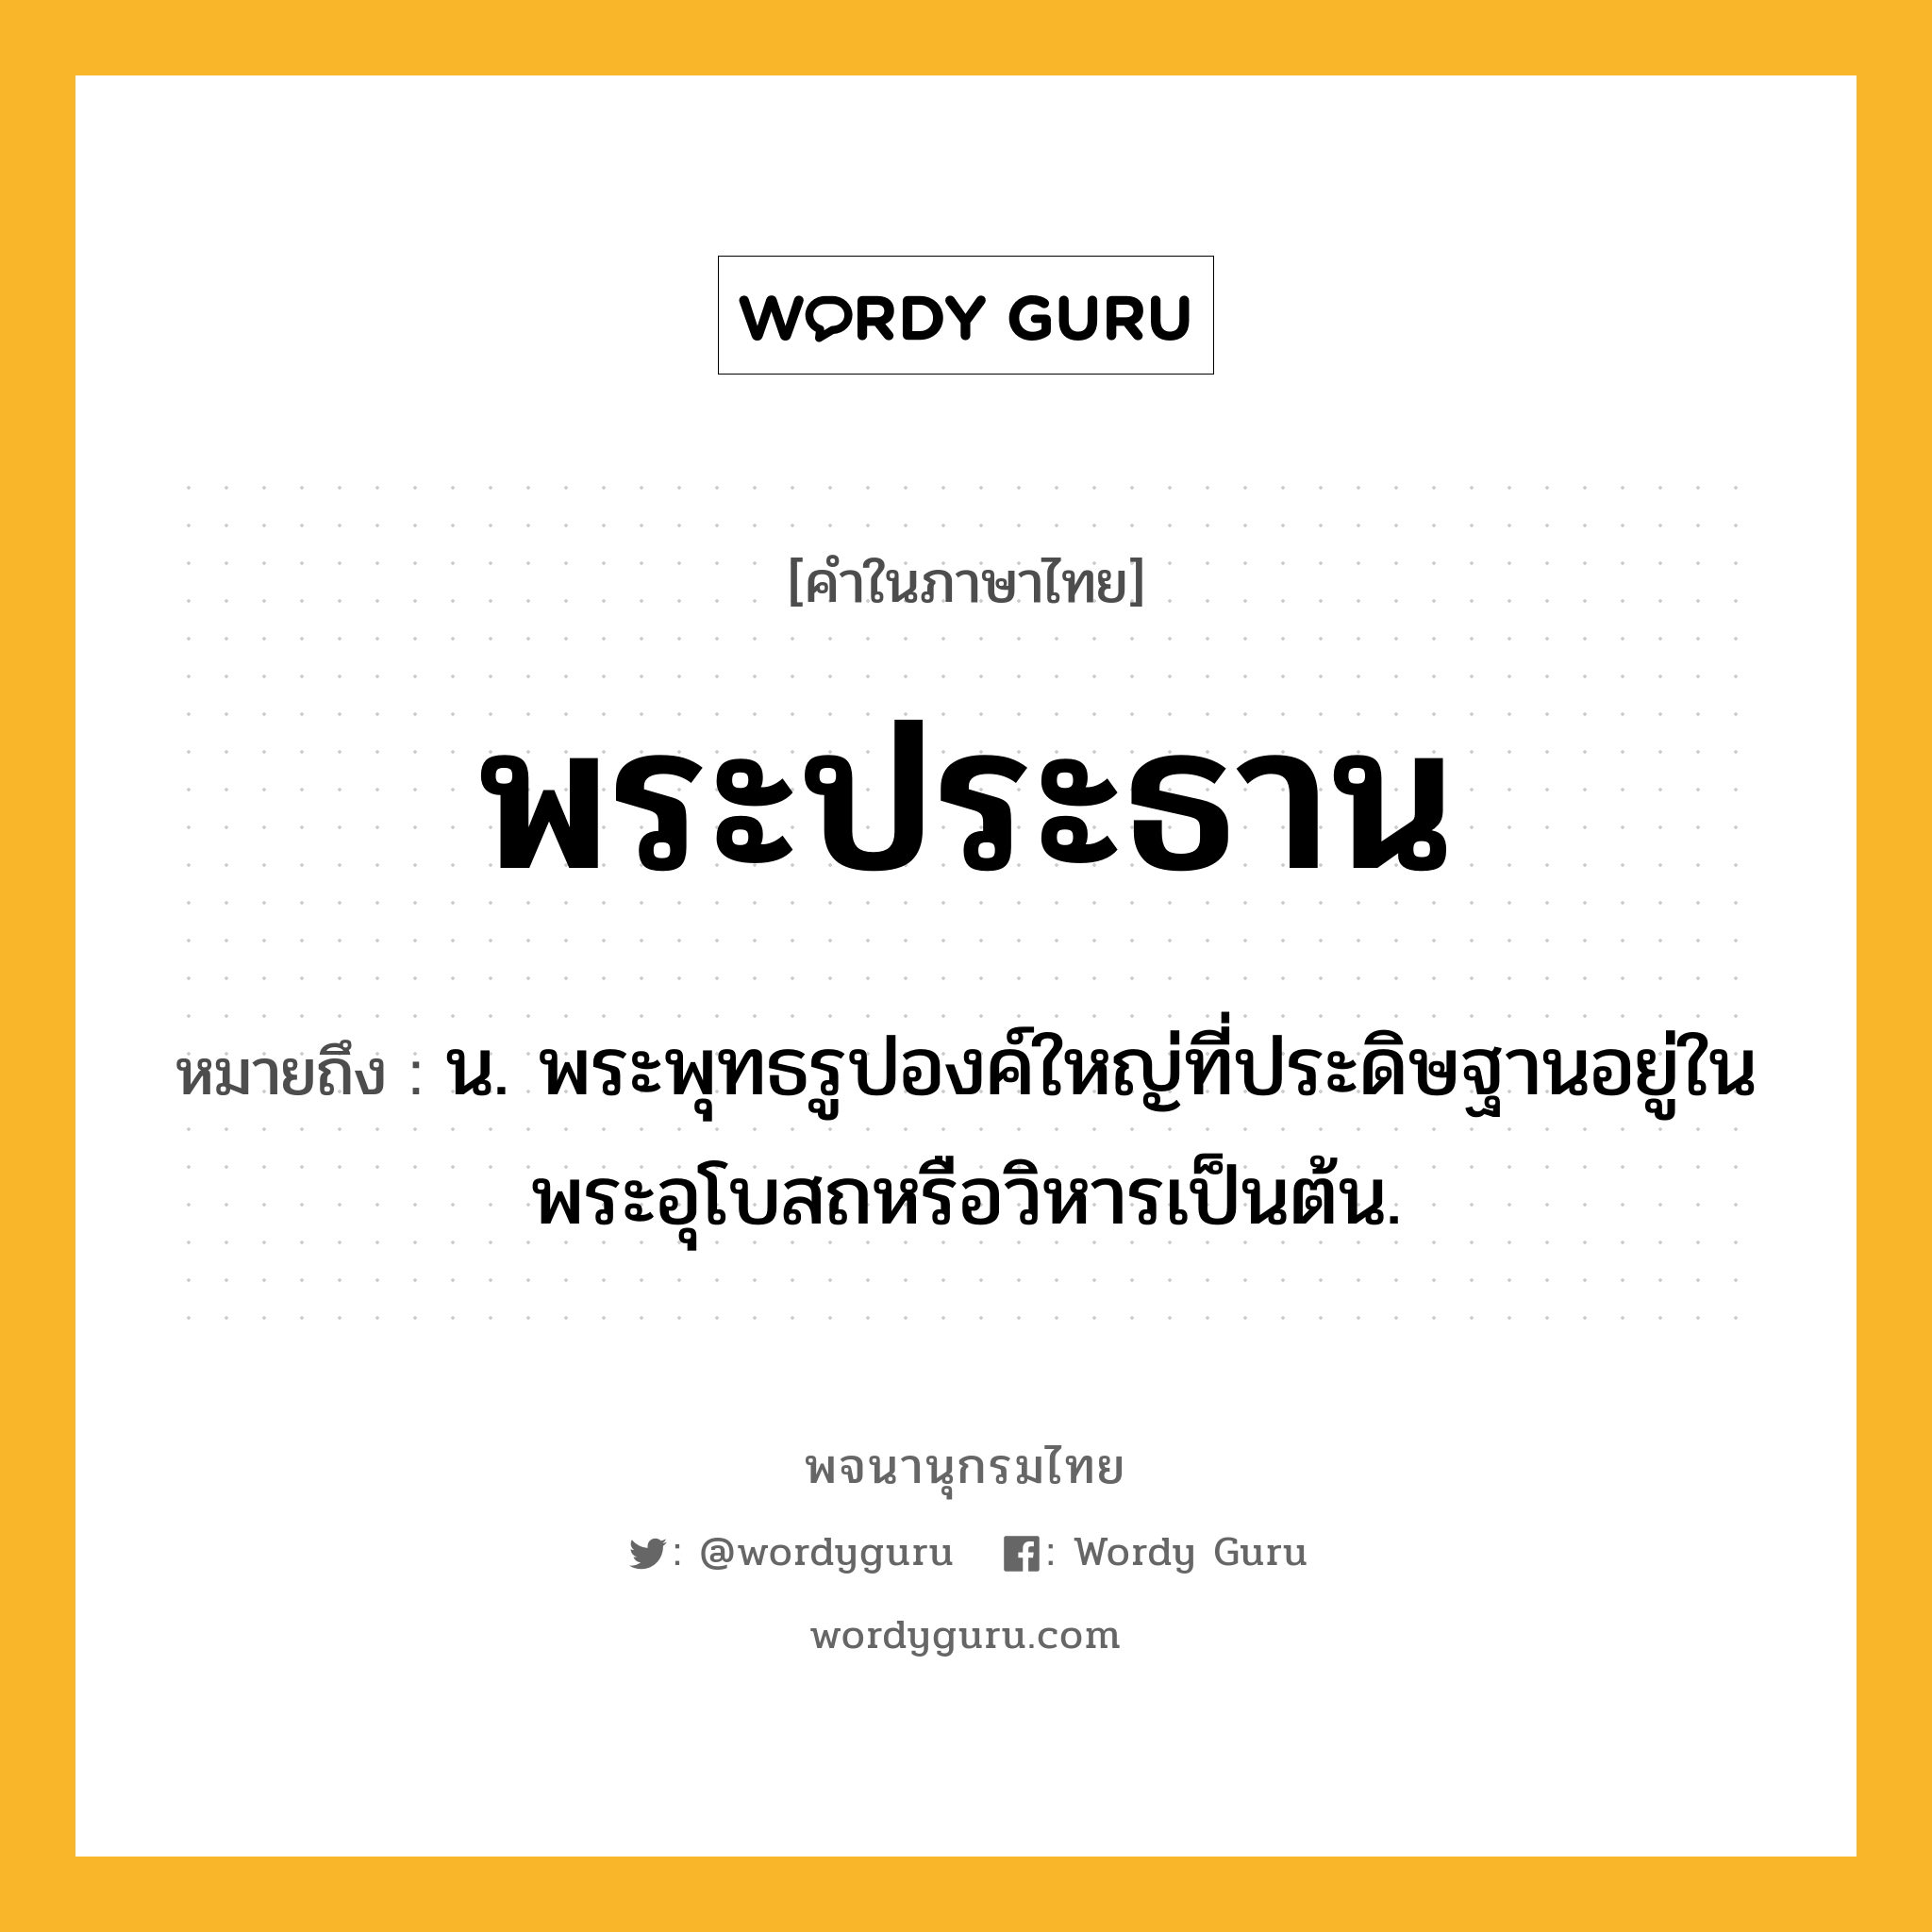 พระประธาน ความหมาย หมายถึงอะไร?, คำในภาษาไทย พระประธาน หมายถึง น. พระพุทธรูปองค์ใหญ่ที่ประดิษฐานอยู่ในพระอุโบสถหรือวิหารเป็นต้น.